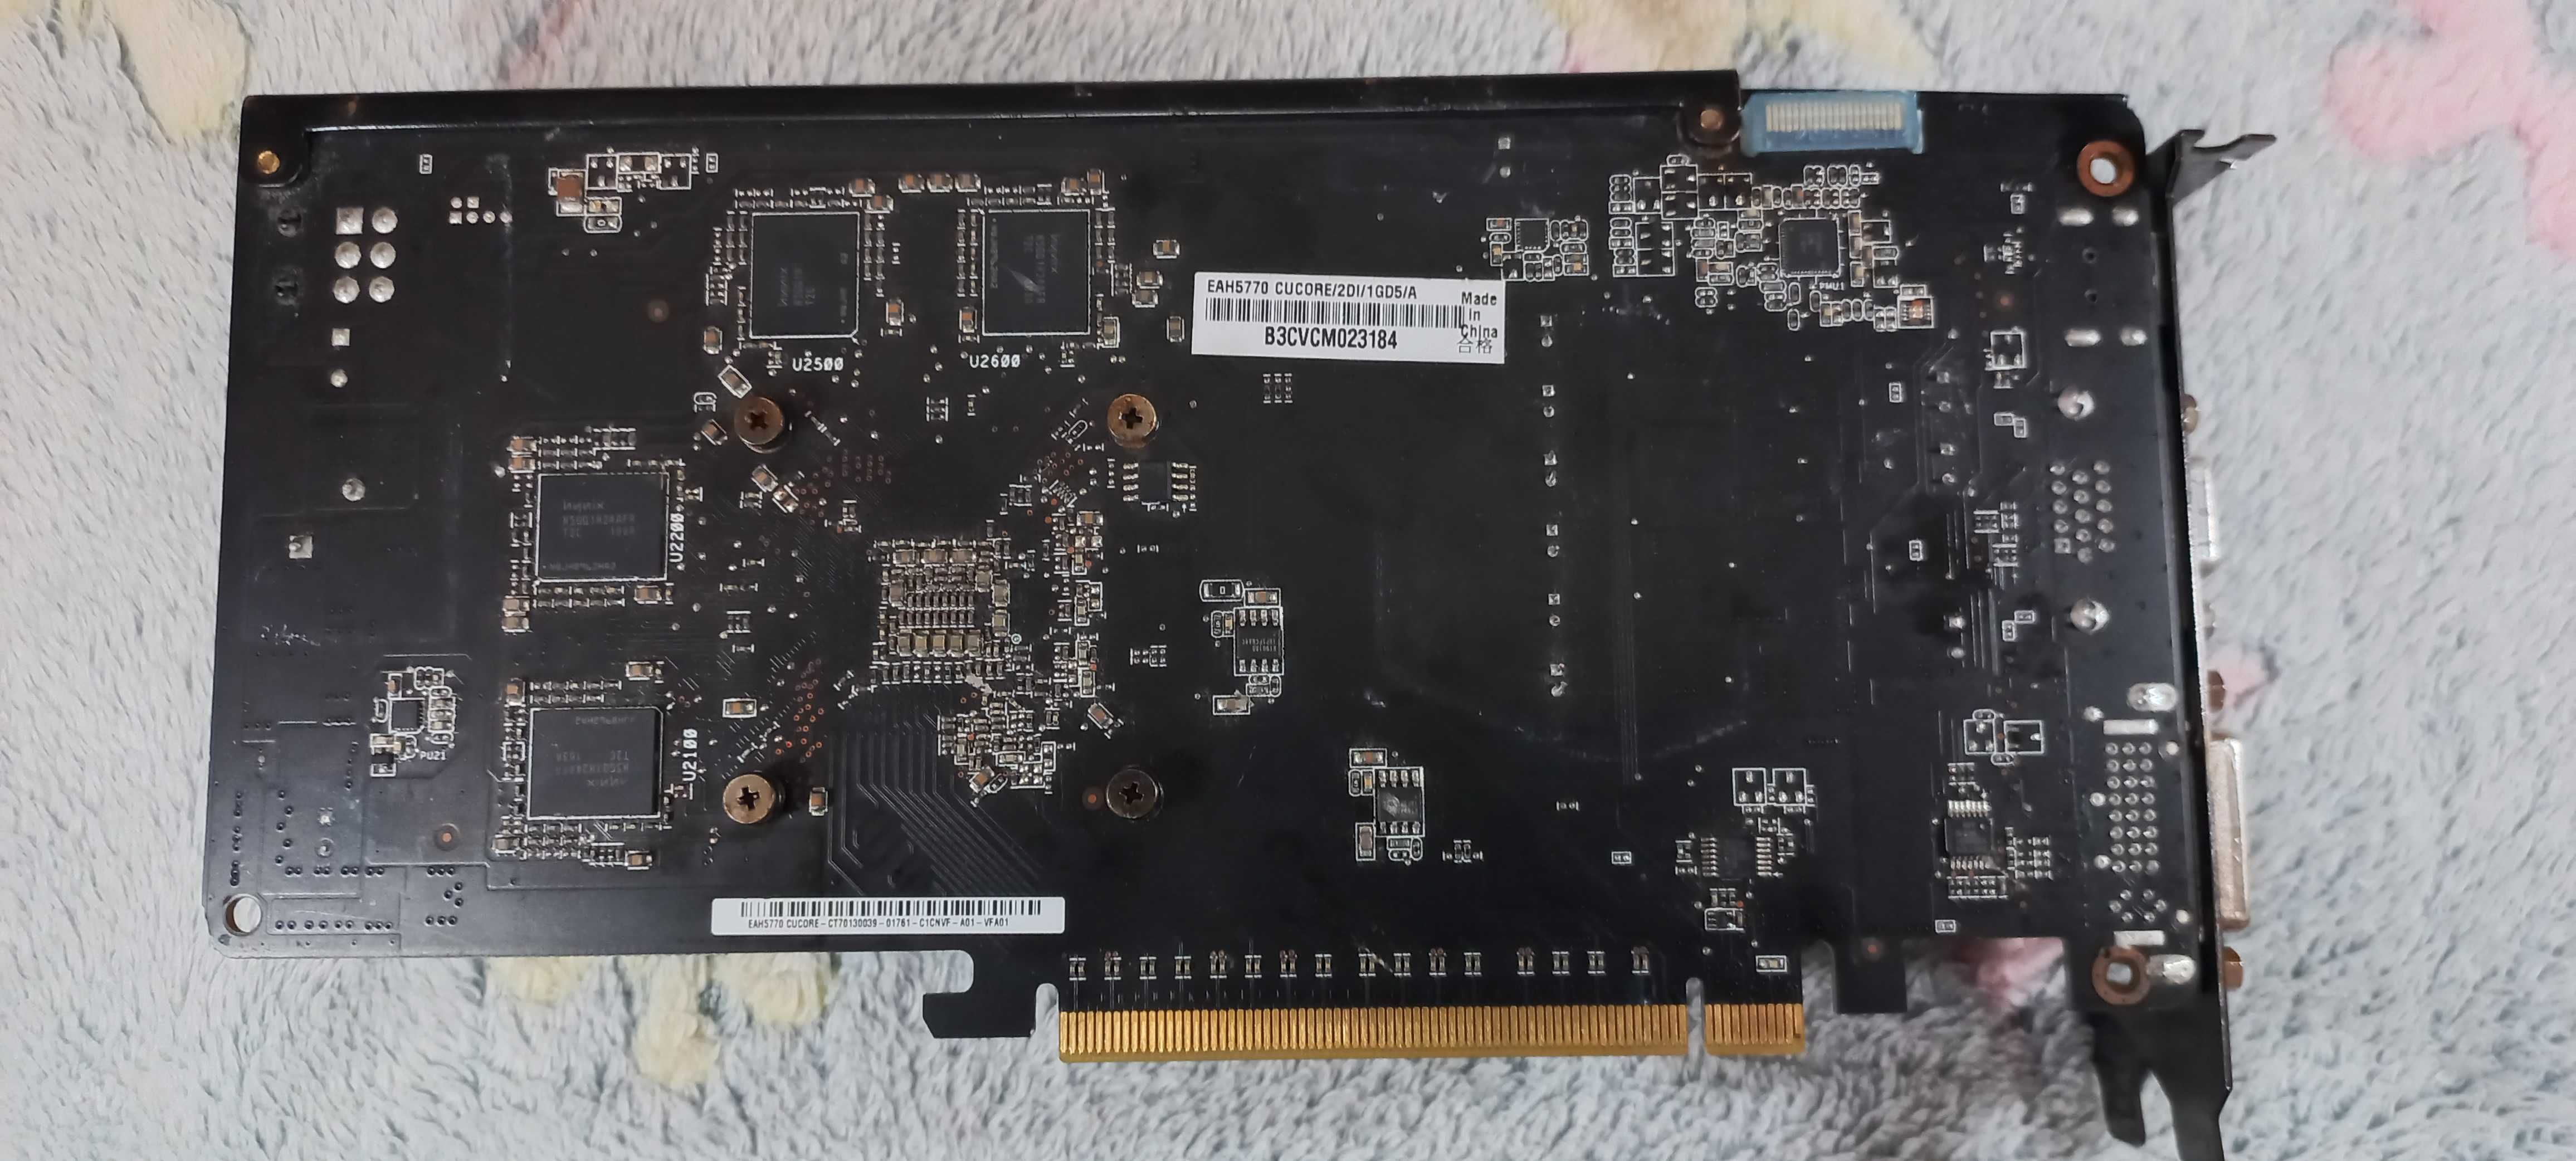 Відеокарта Asus PCI-Ex Radeon HD5770 1024MB GDDR5